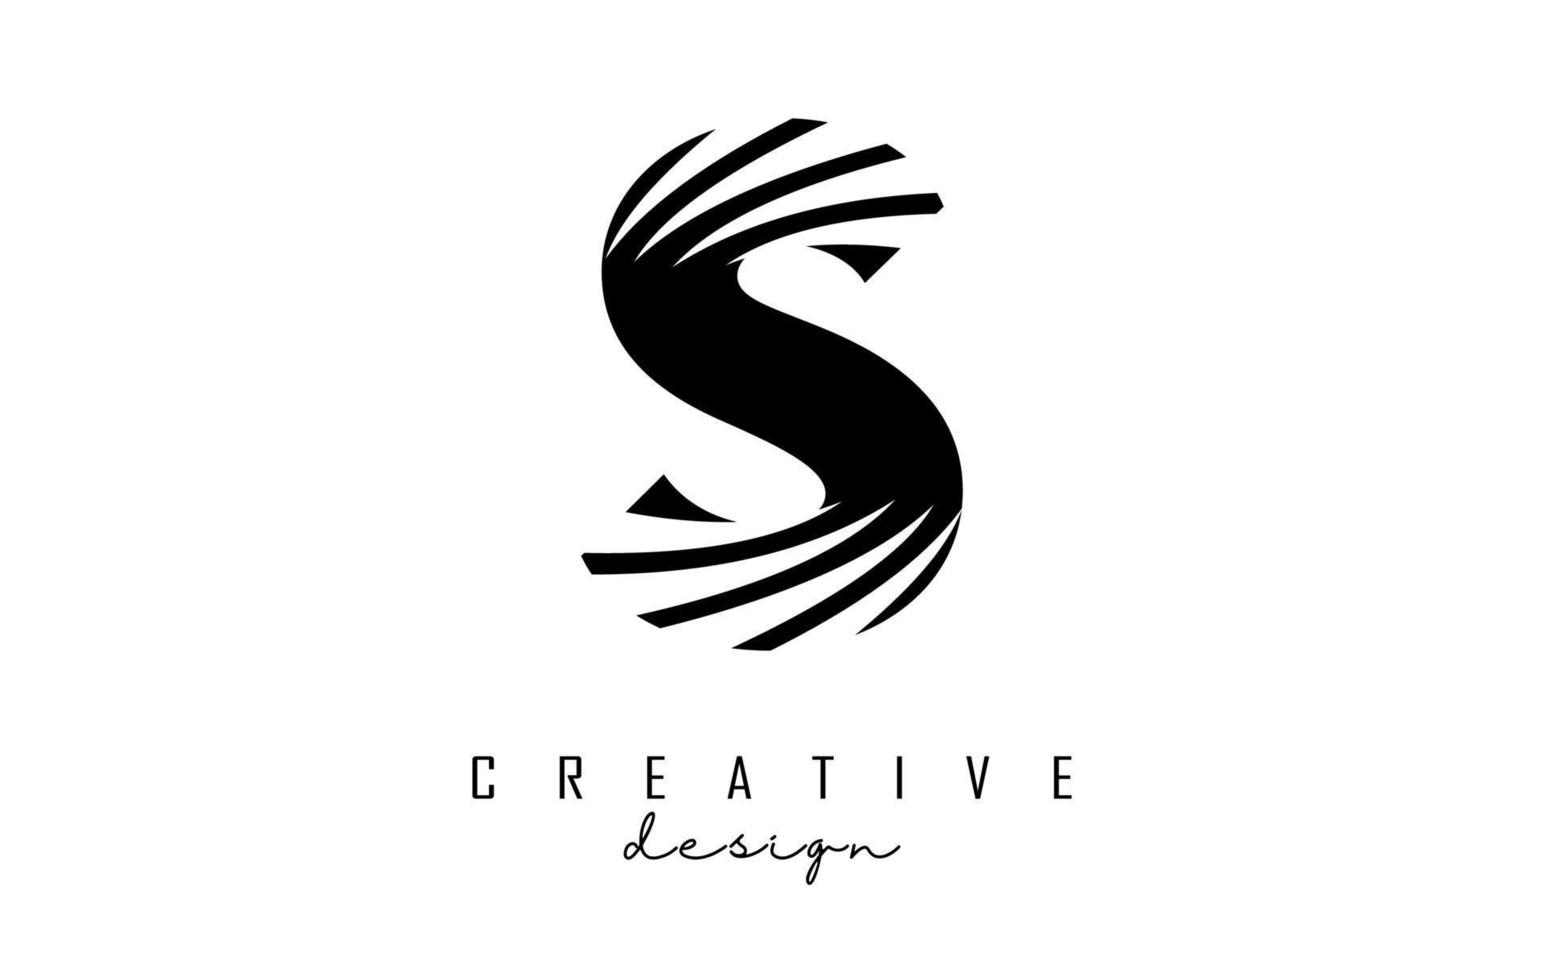 schwarzes buchstaben-s-logo mit führenden linien und negativem raumdesign. brief mit geometrischem und kreativem schnittkonzept. vektor